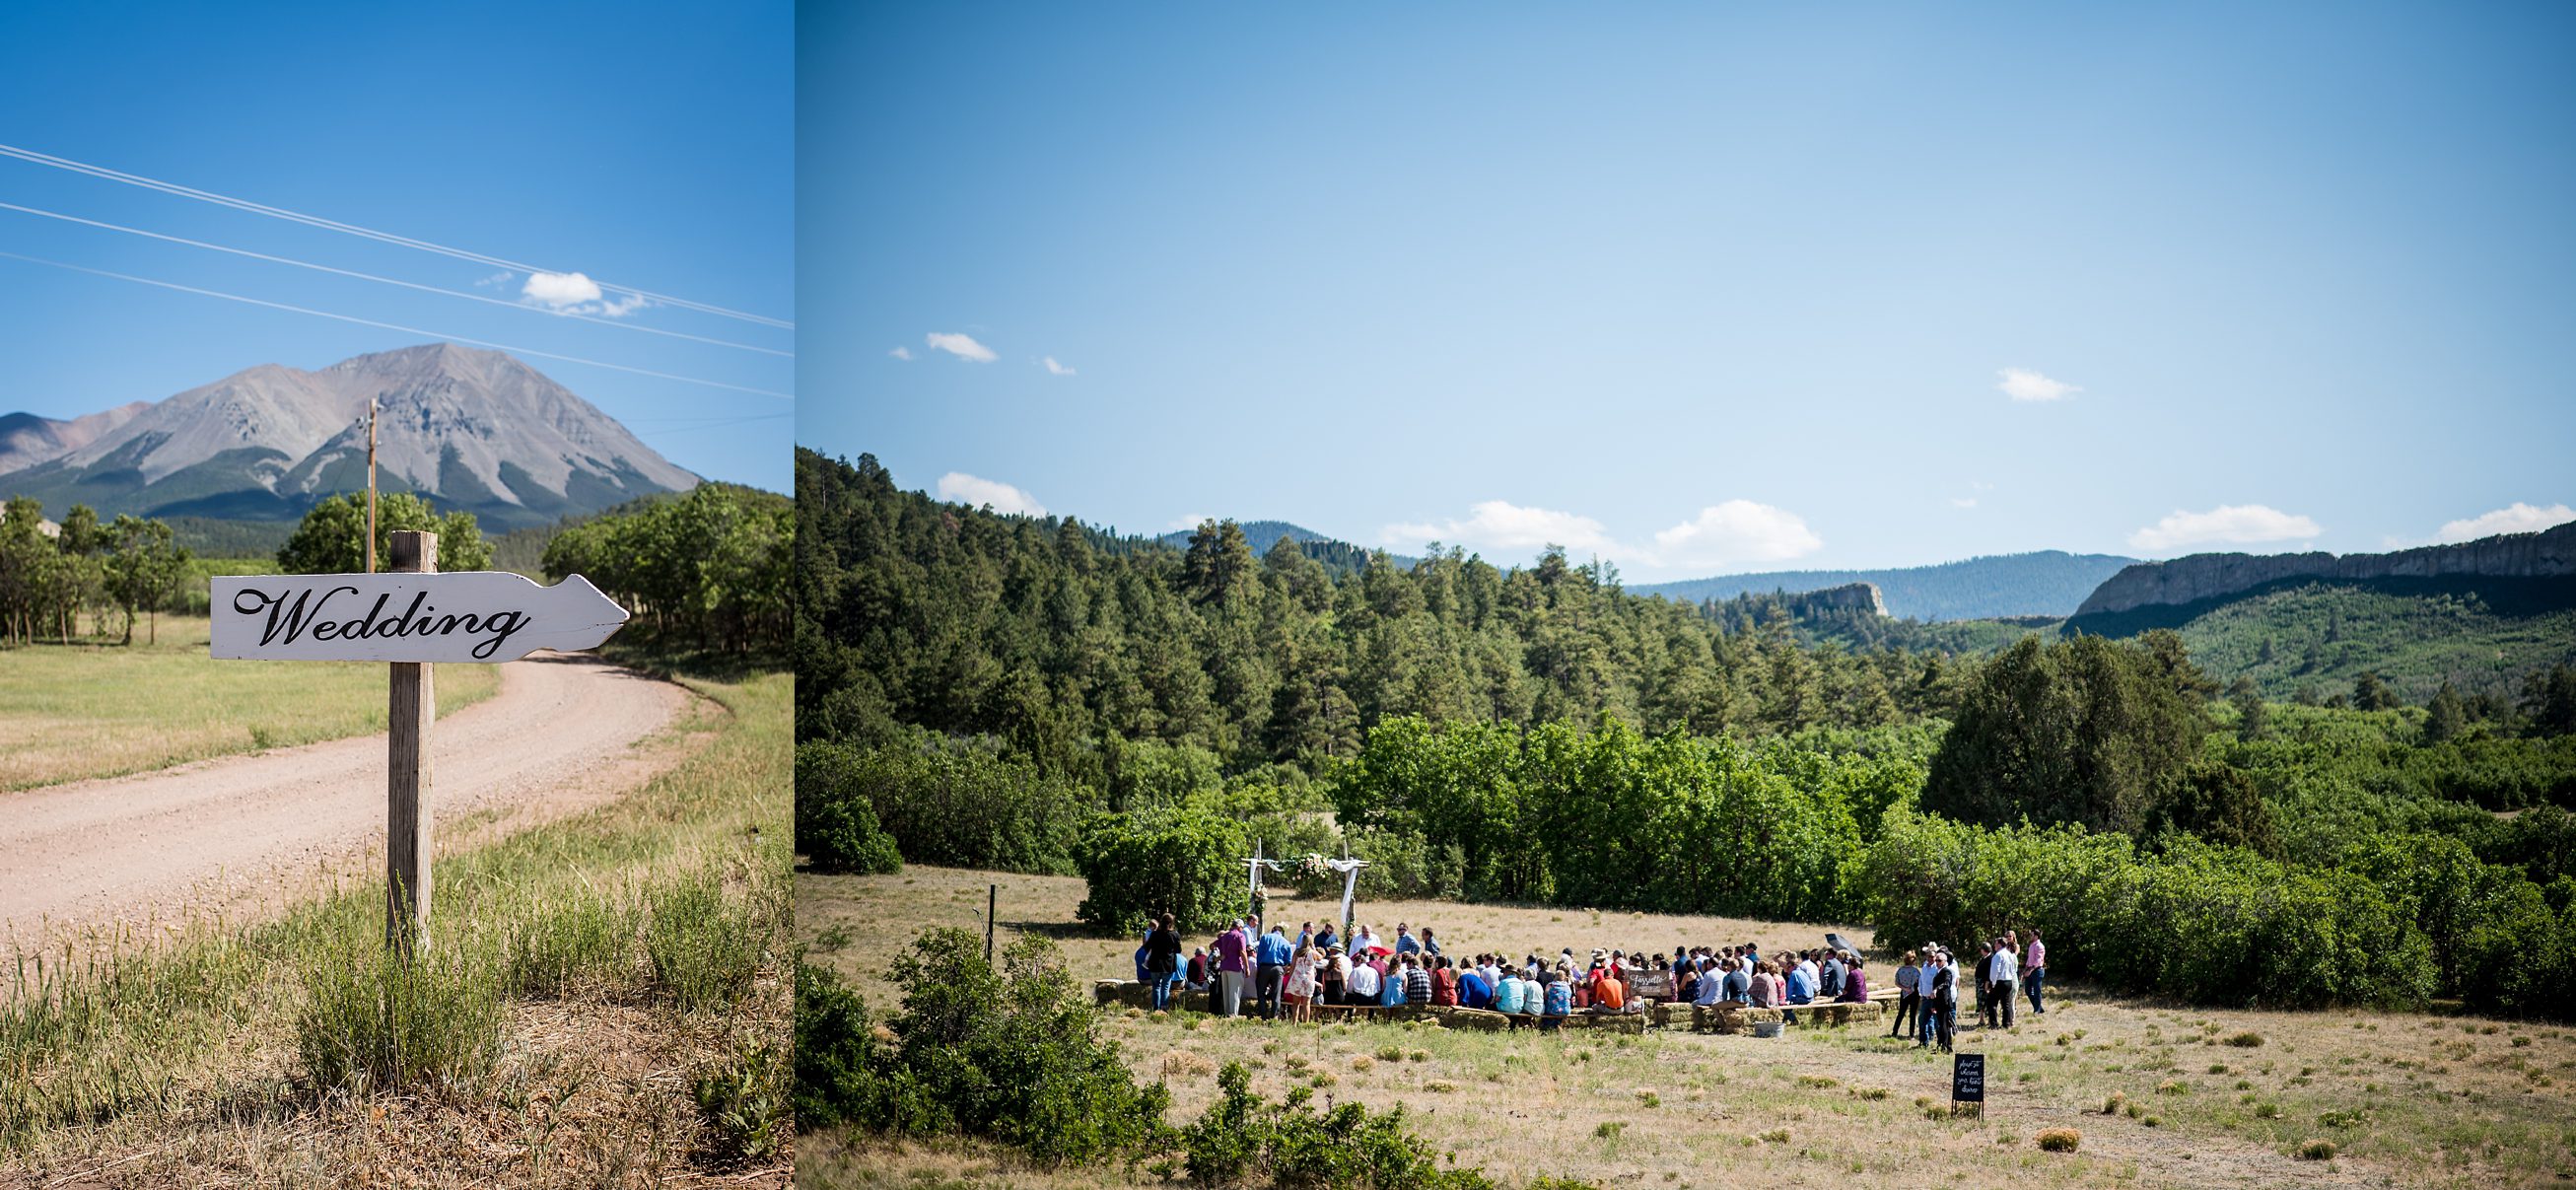  Colorado weddings, Cuchara, Albright Ranch